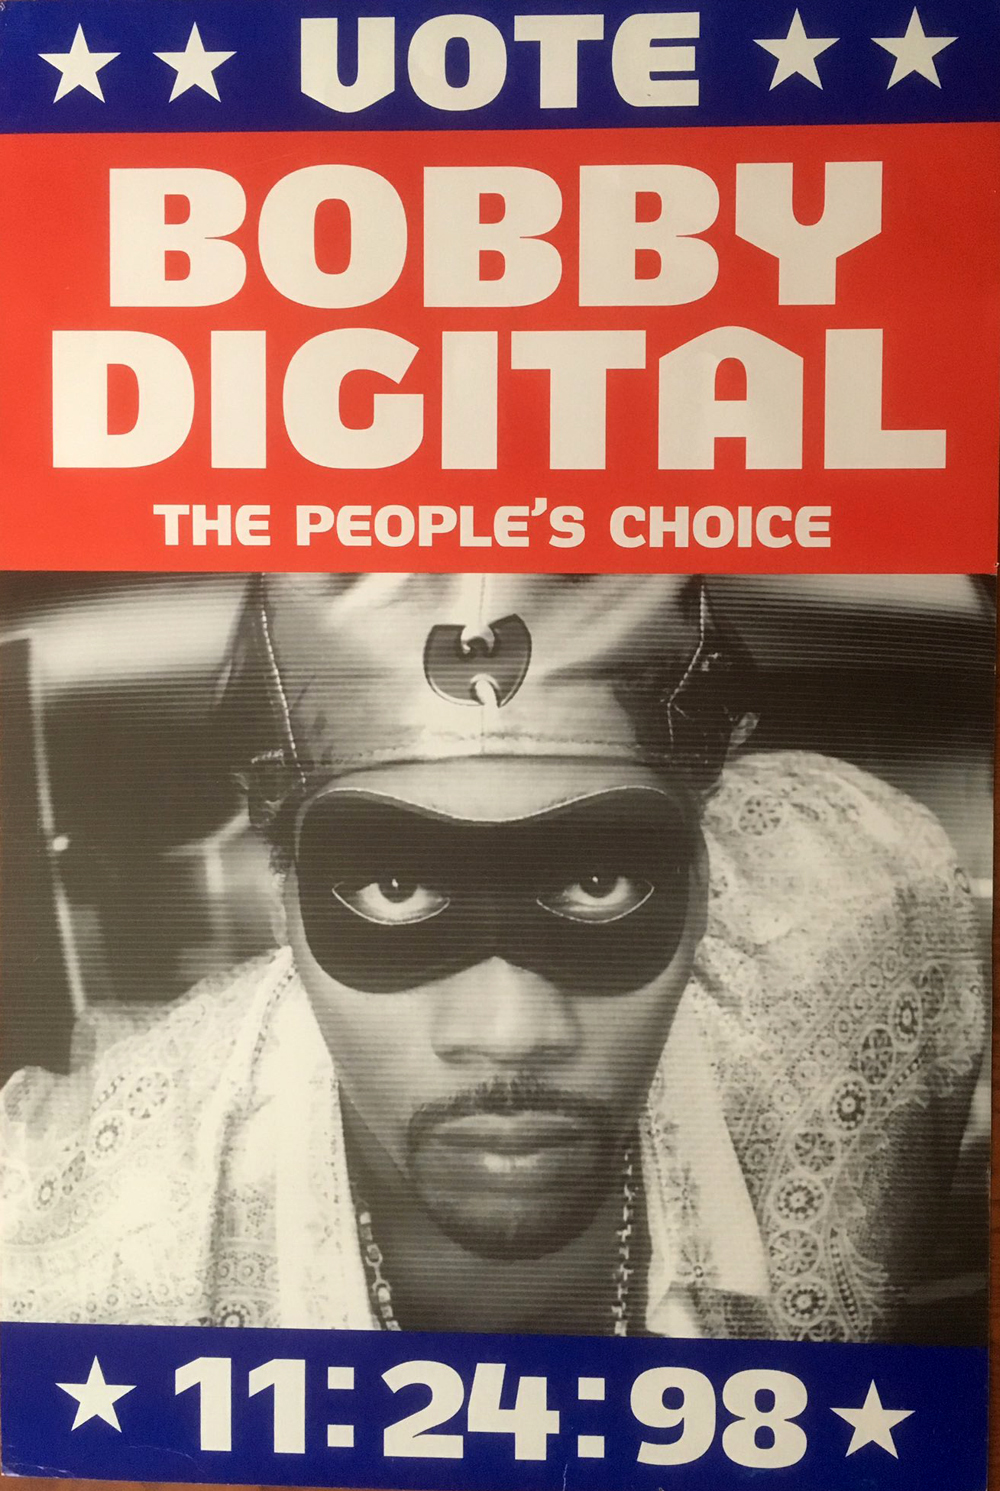 RZA as Bobby Digital